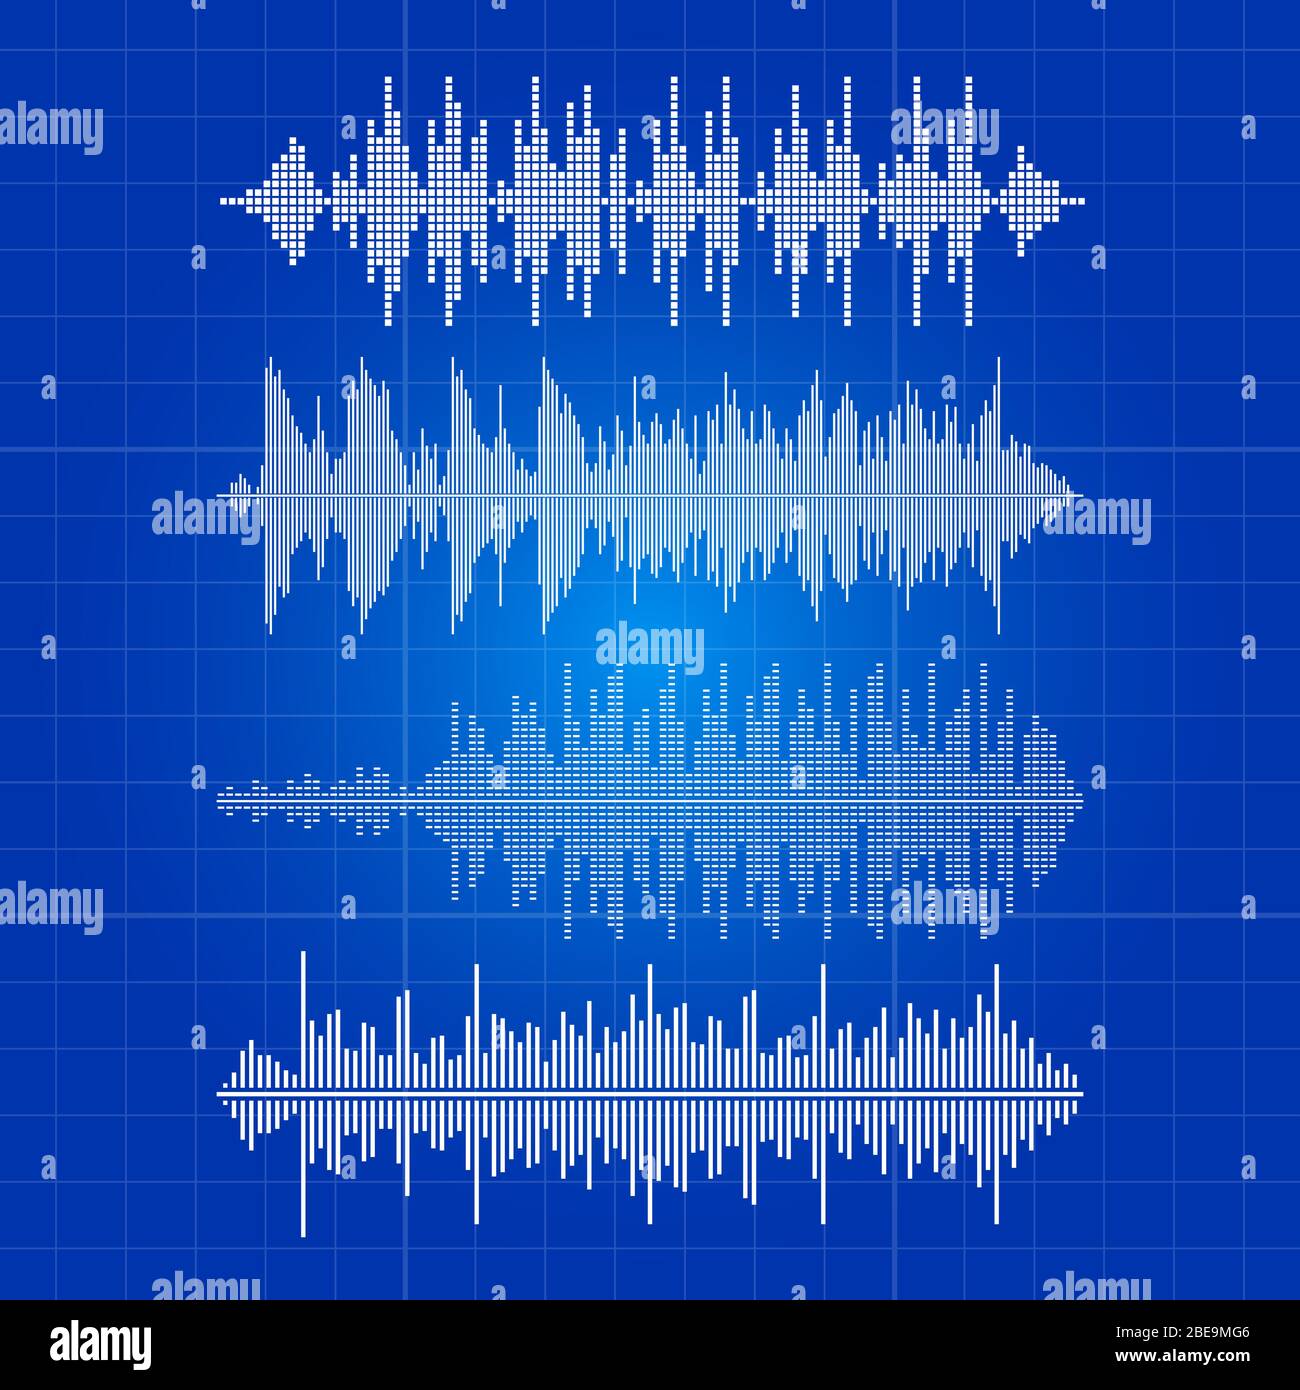 White music Waves Collection - musikalischer Puls auf blauer Kulisse. Equalizer weiße Schallwelle digital, Frequenz, Puls Melodie Wellenform, Vektor-Illustration Stock Vektor